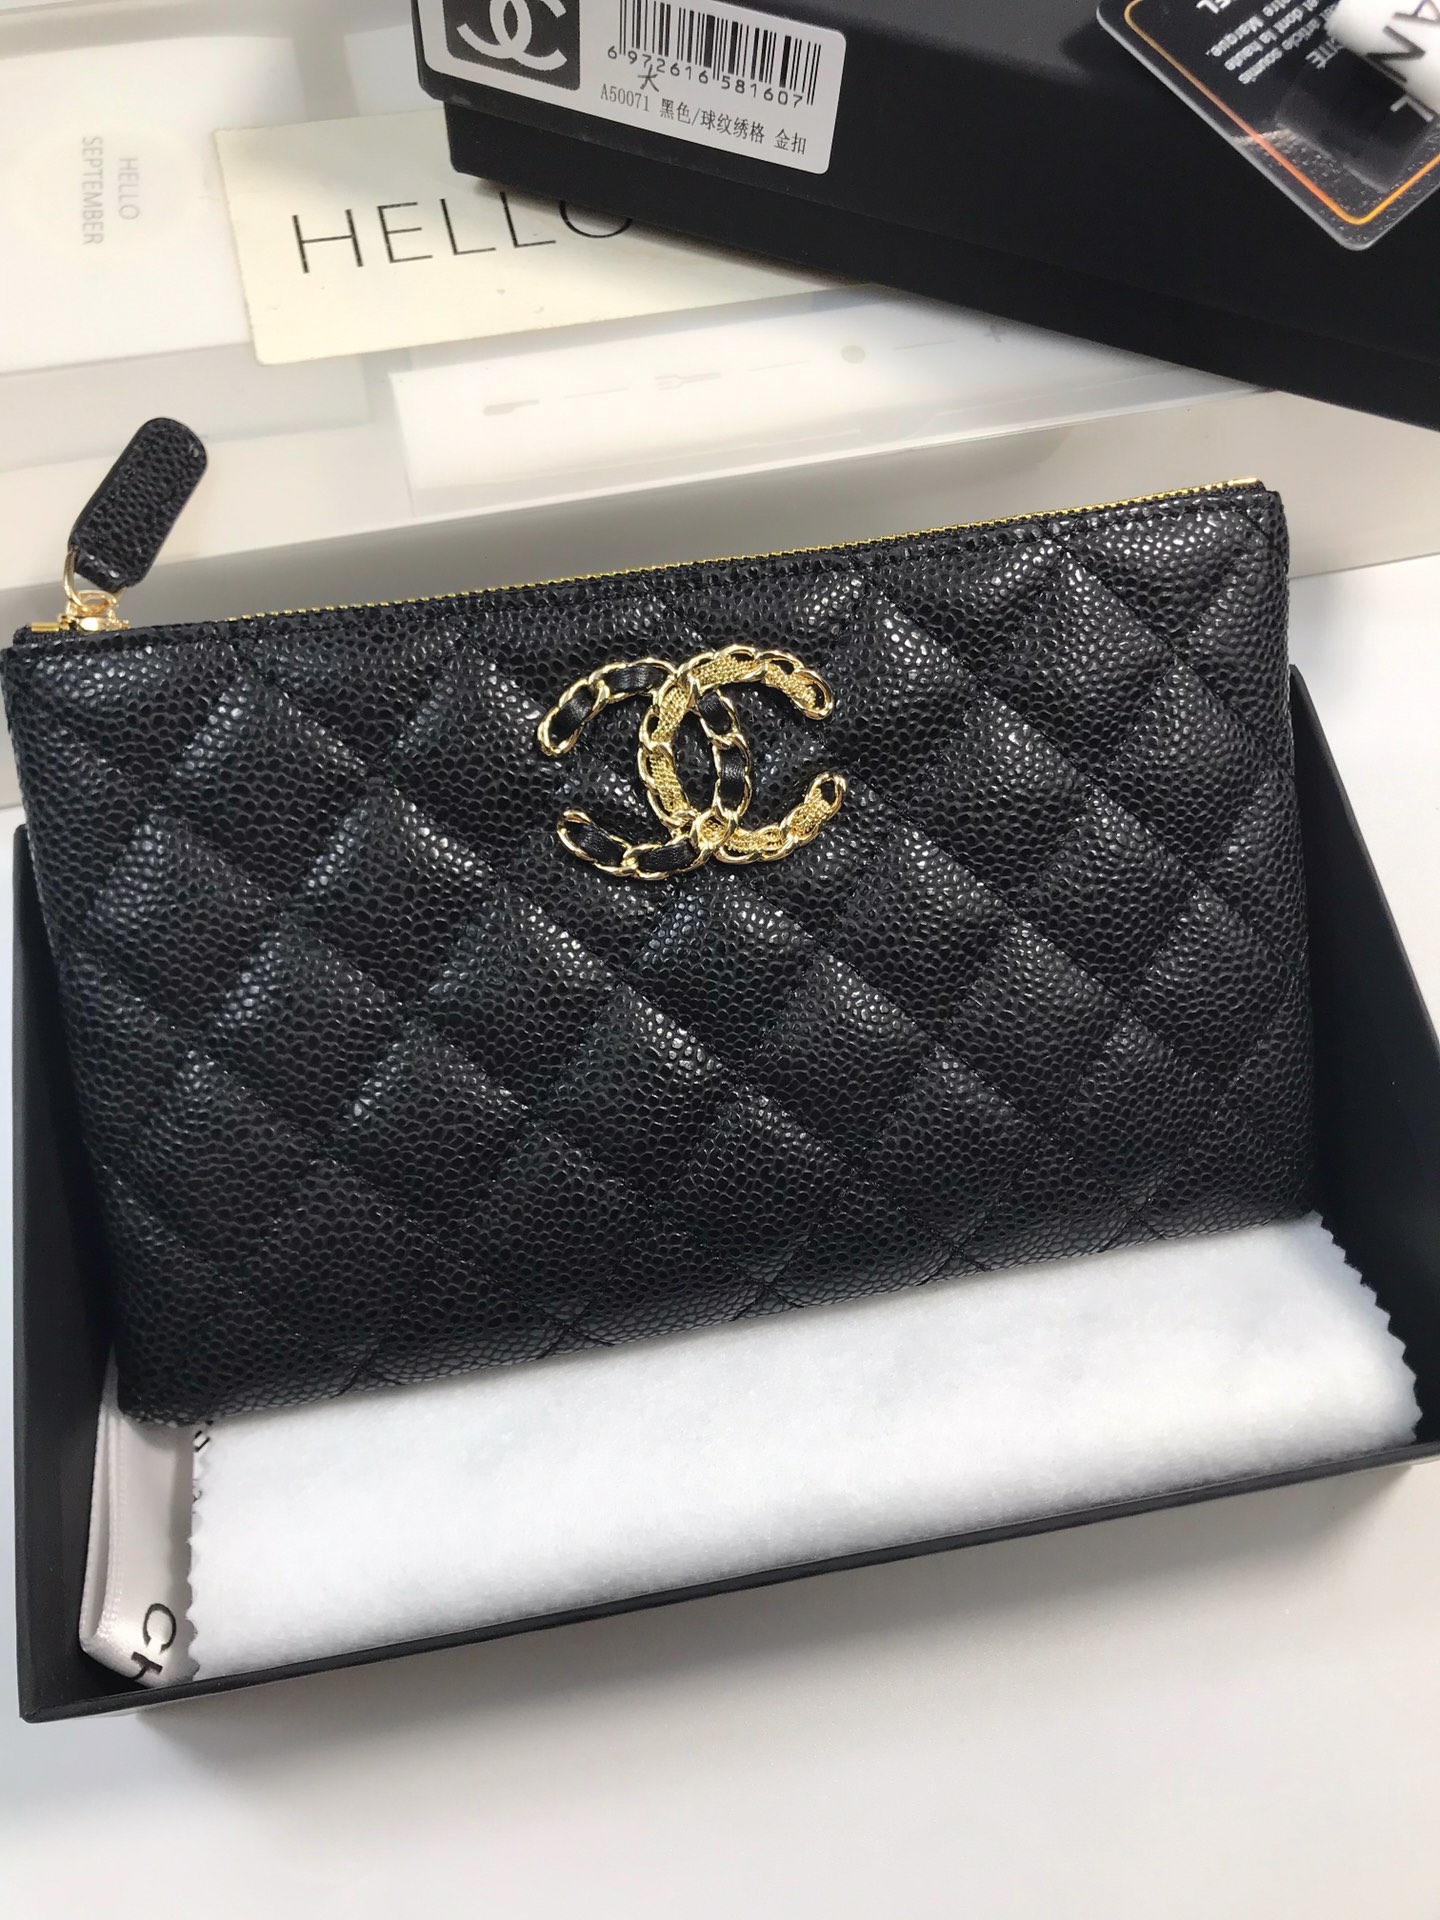 Chanel 高貴菱格紋手拿包